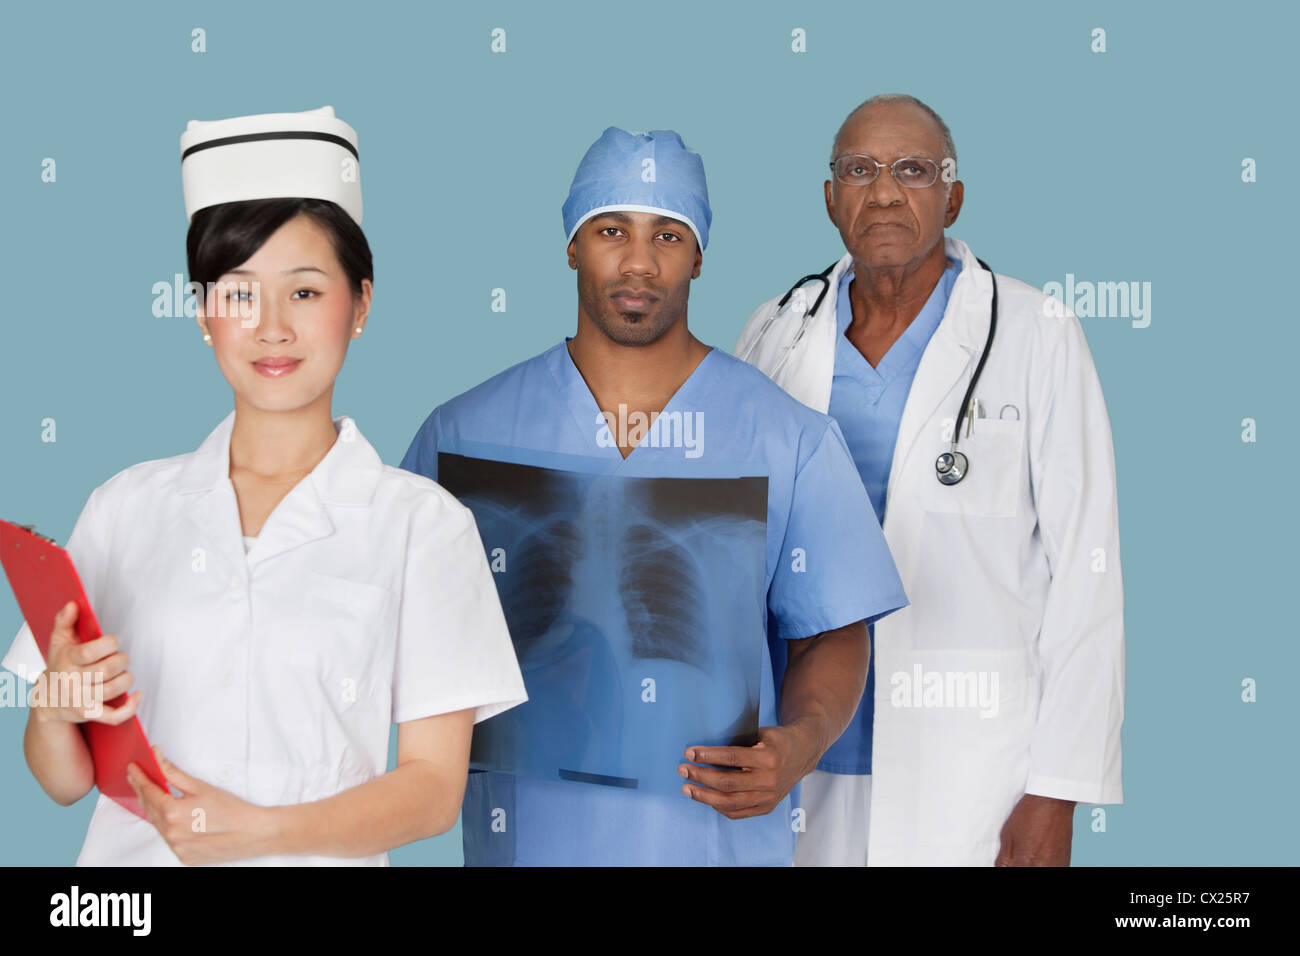 Portrait de trois professionnels médicaux multi ethnic sur fond bleu clair Banque D'Images